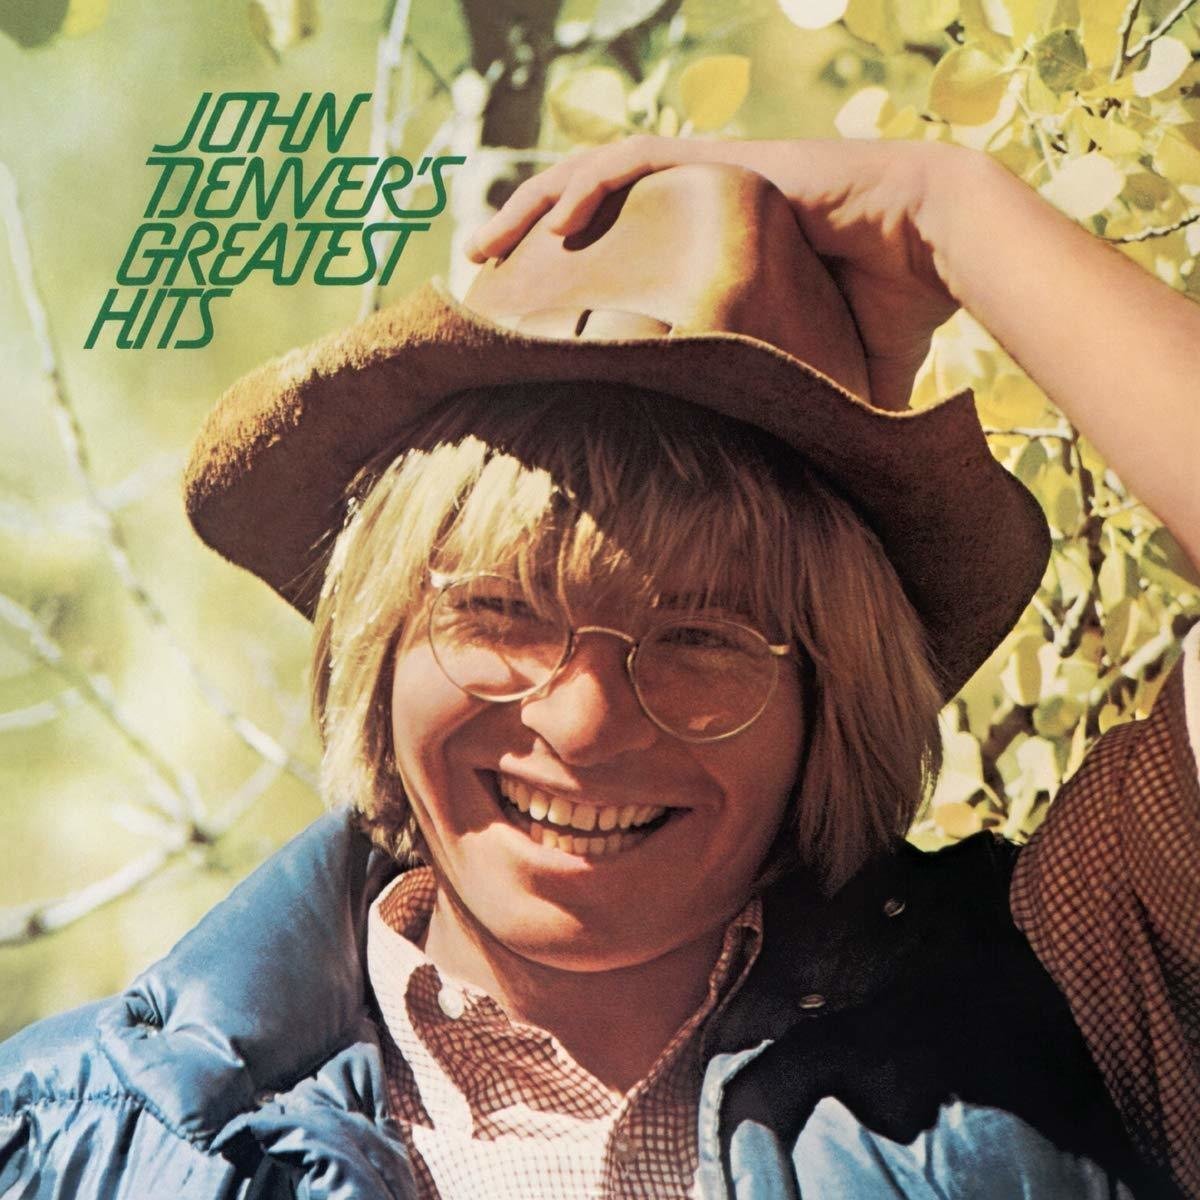 John Denver Greatest Hits (LP) John Denver